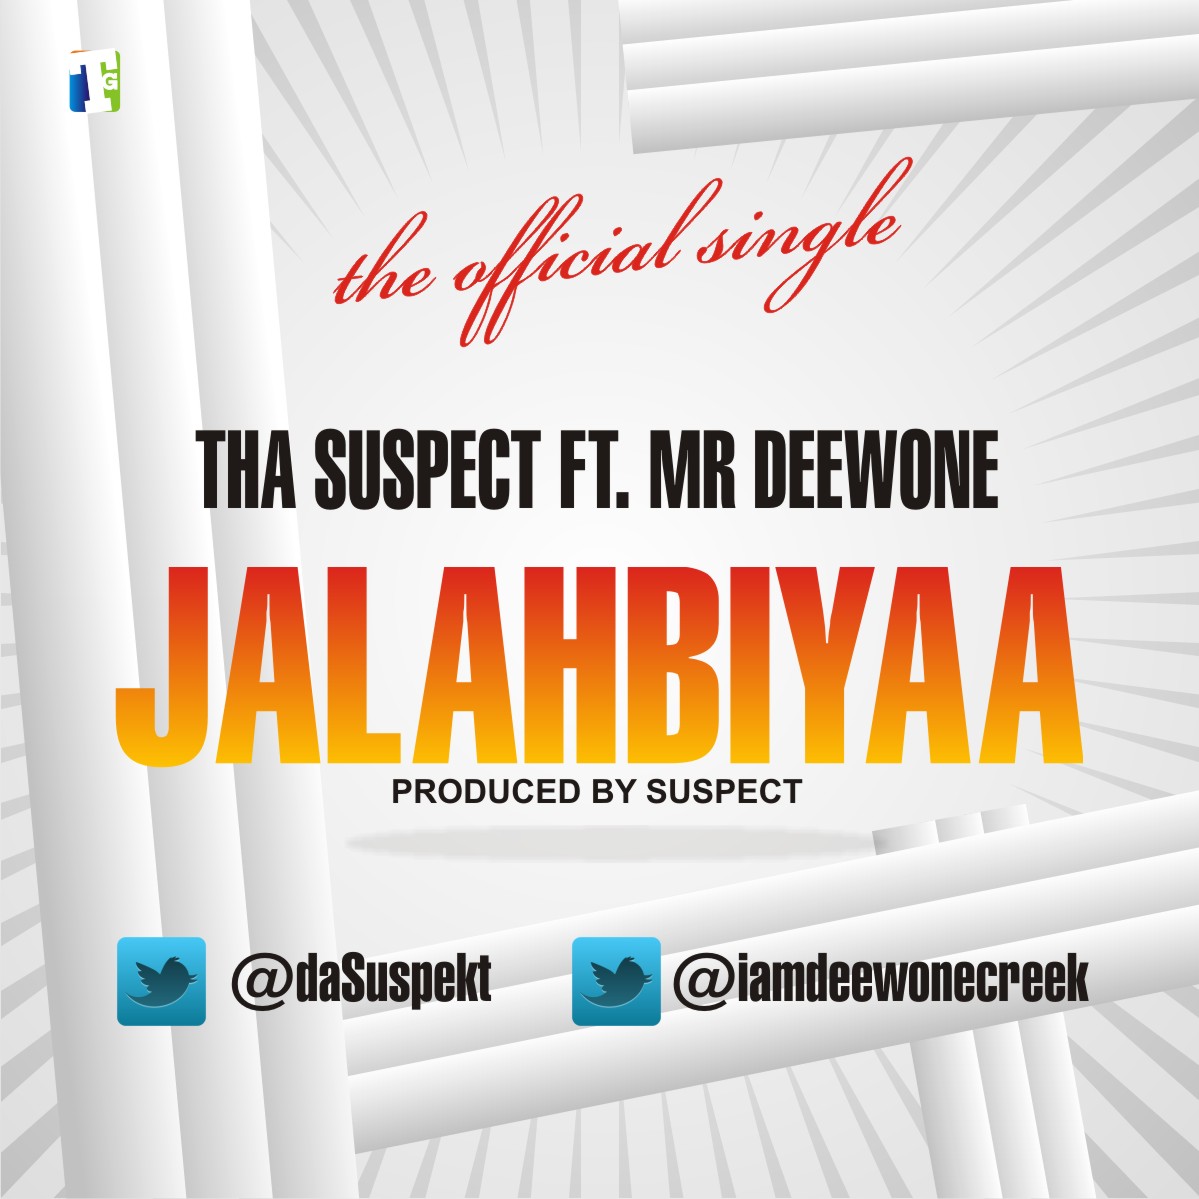 Tha Suspect - JalahBiyaa ft. Mr Deewone - notjustOk